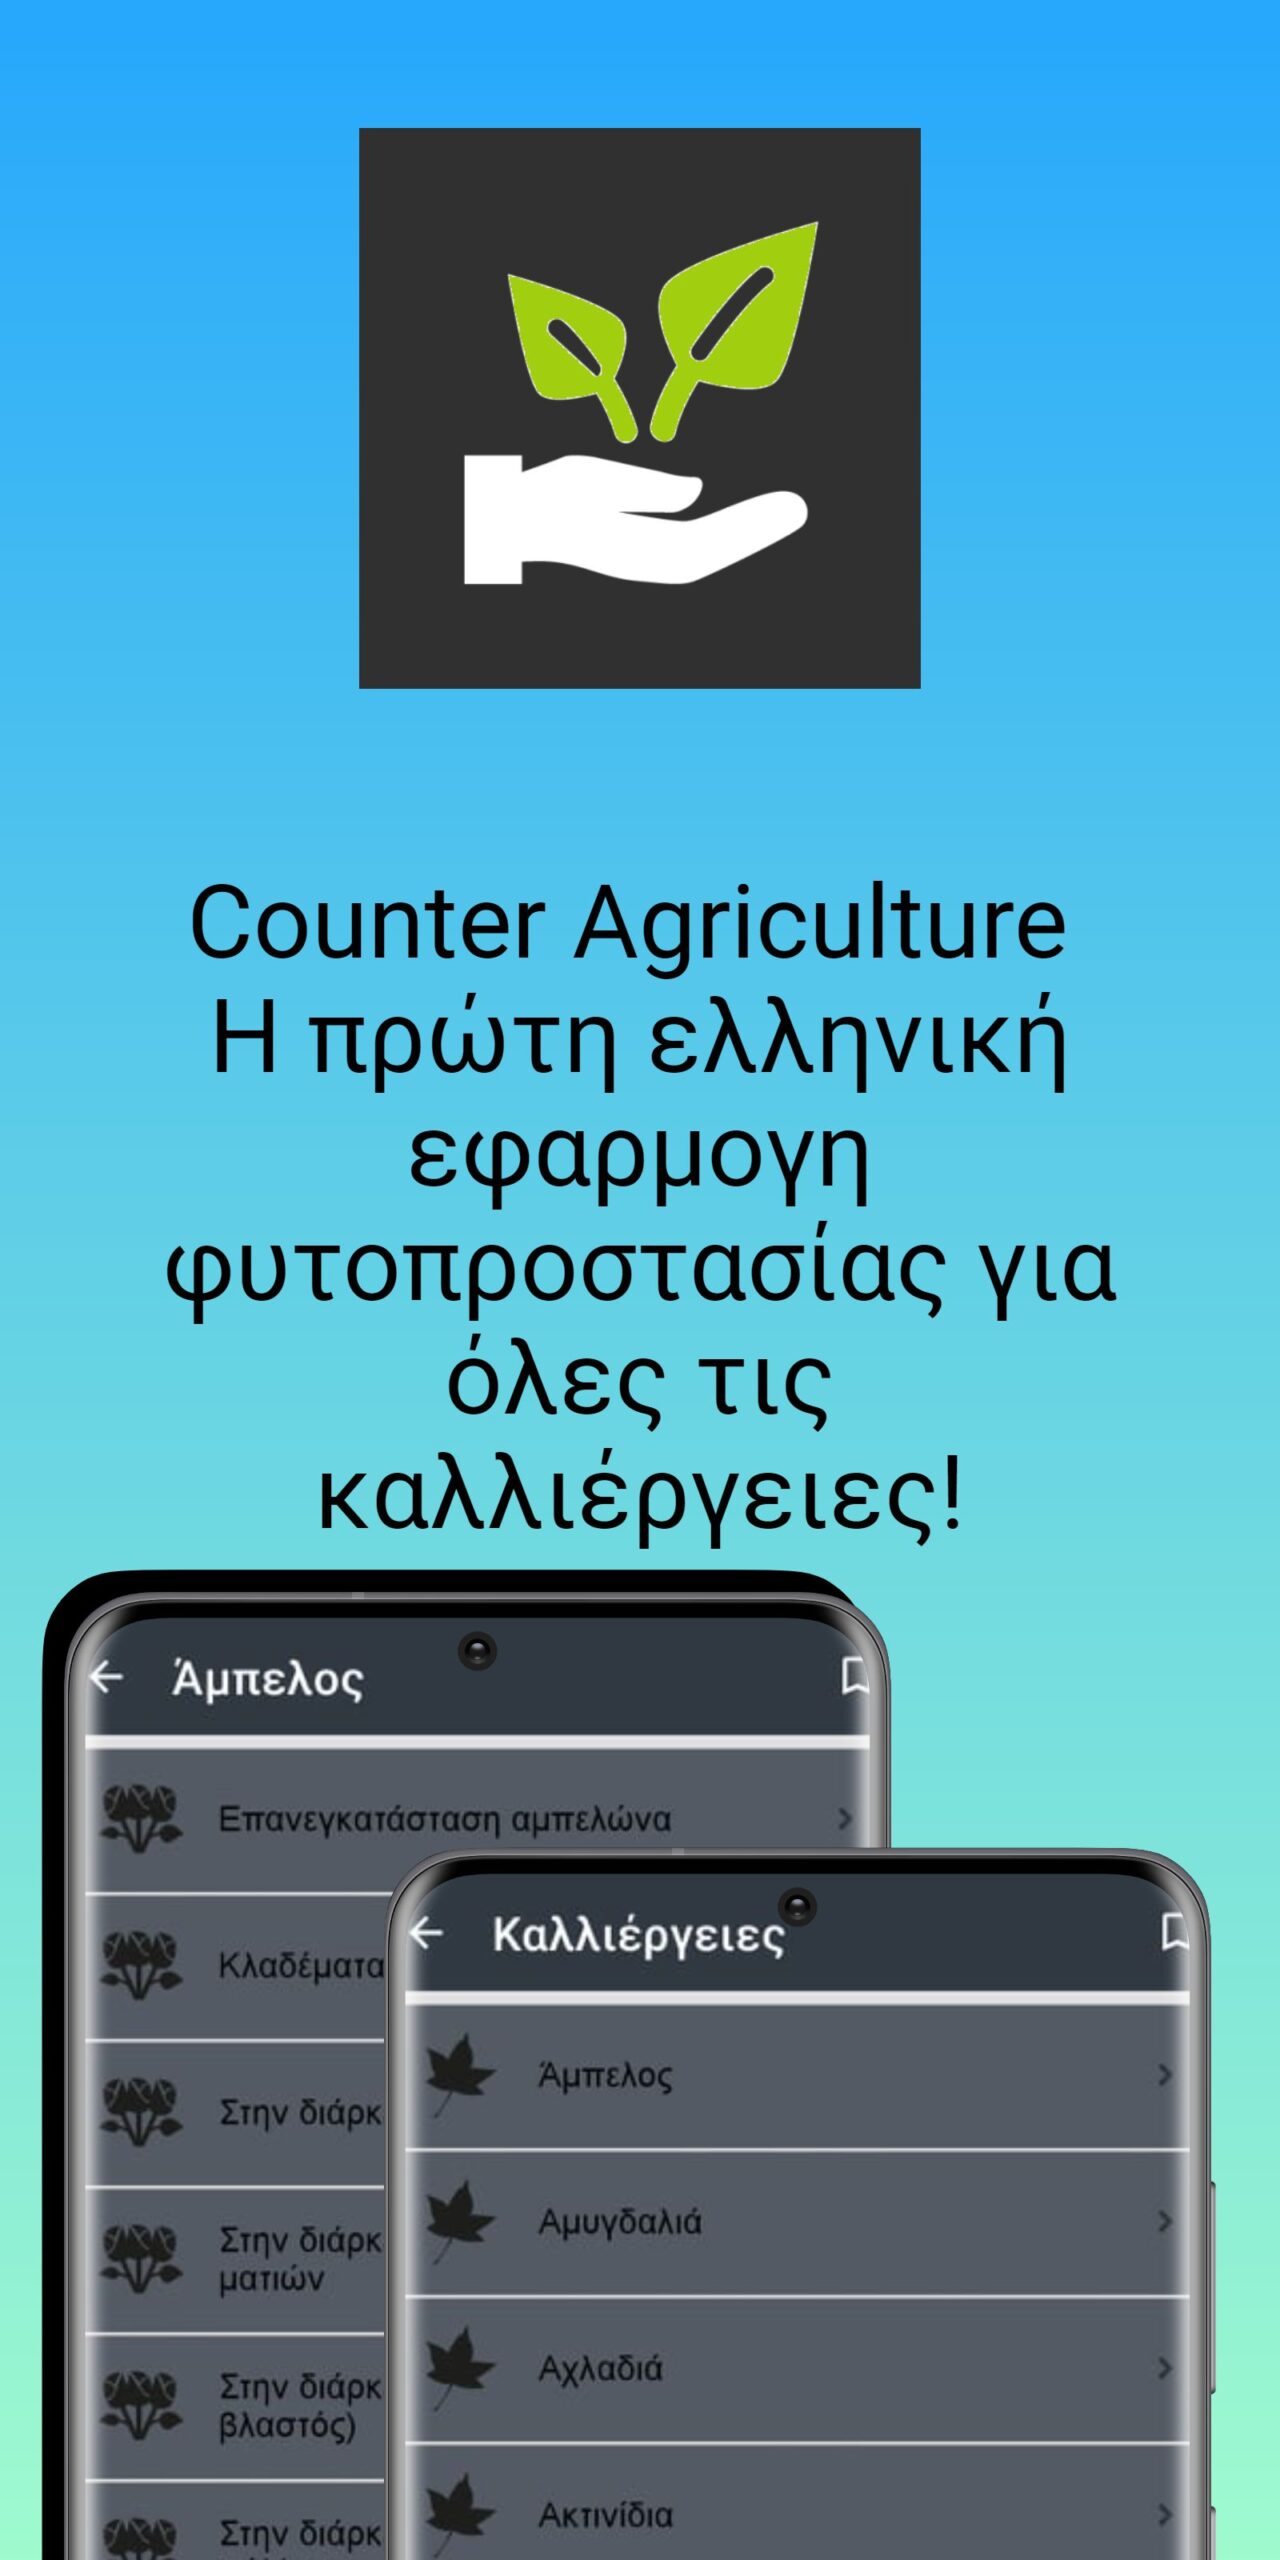 Η πρώτη ελληνική εφαρμογή κινητών φυτοπροστασίας για όλες τις καλλιέργειες στην Ελλάδα!